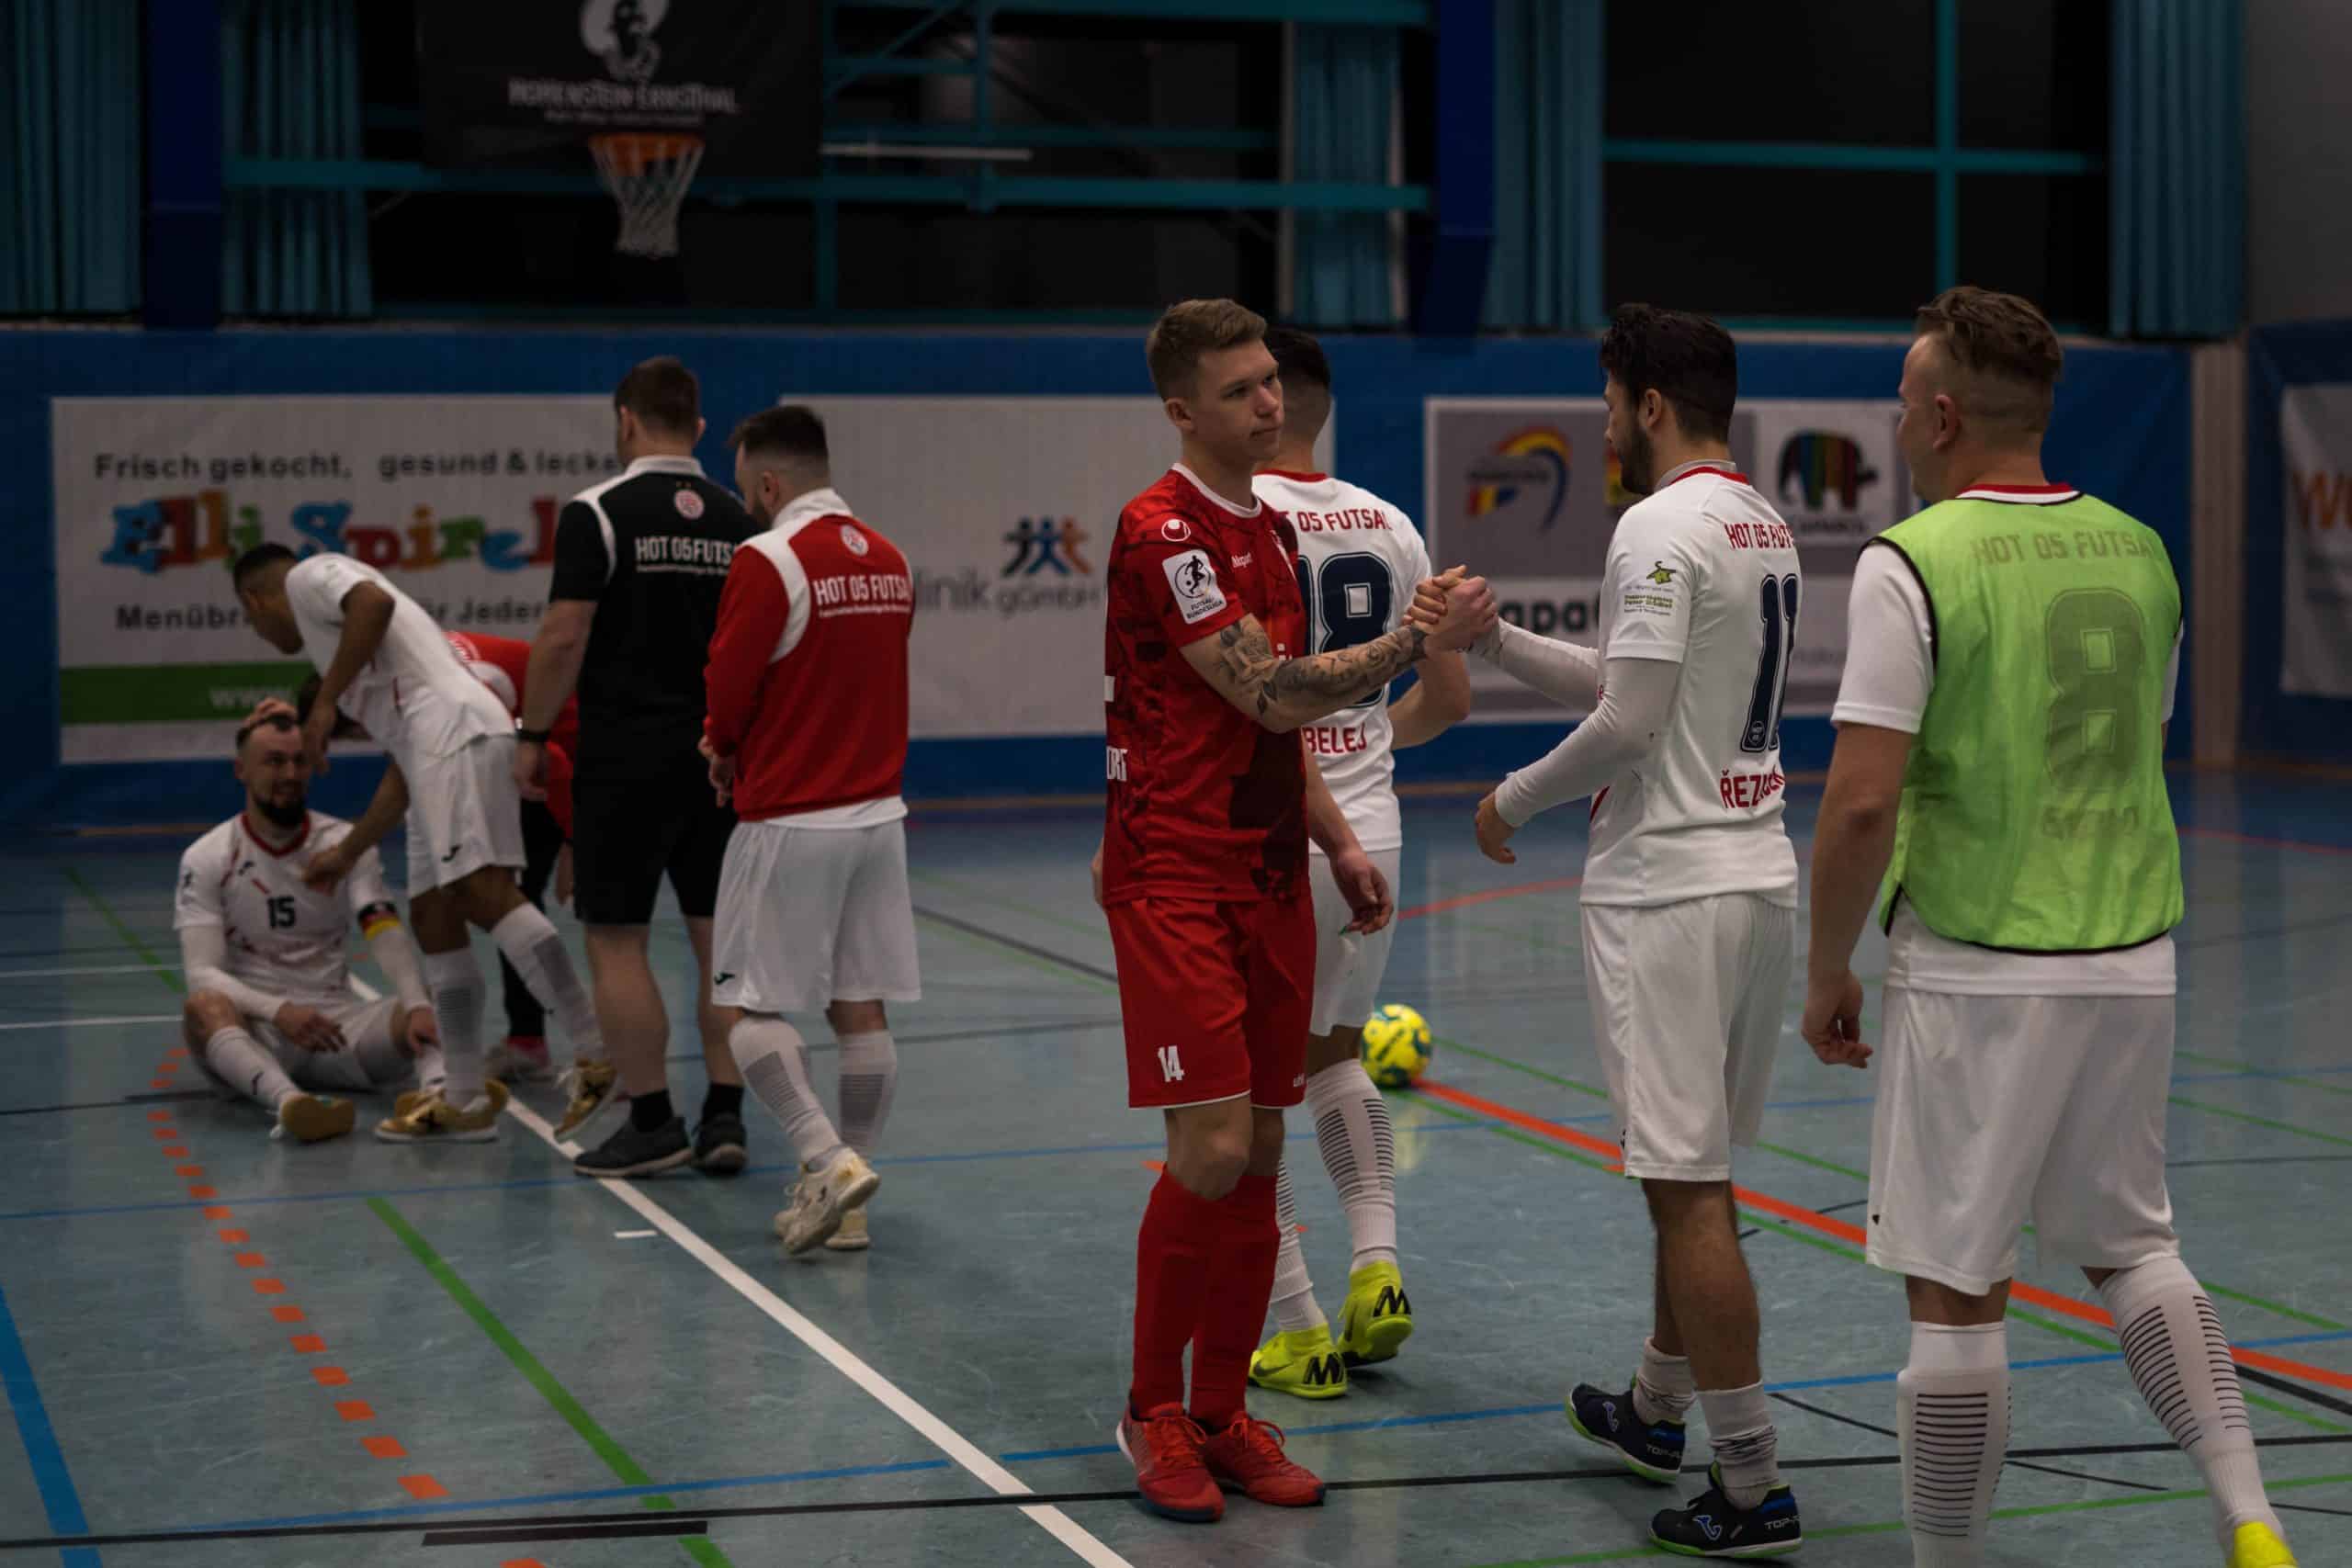 DSC04619 scaled - Die Futsal-Bundesliga geht in die Playoffs | Eine spannende Premierensaison im Überblick